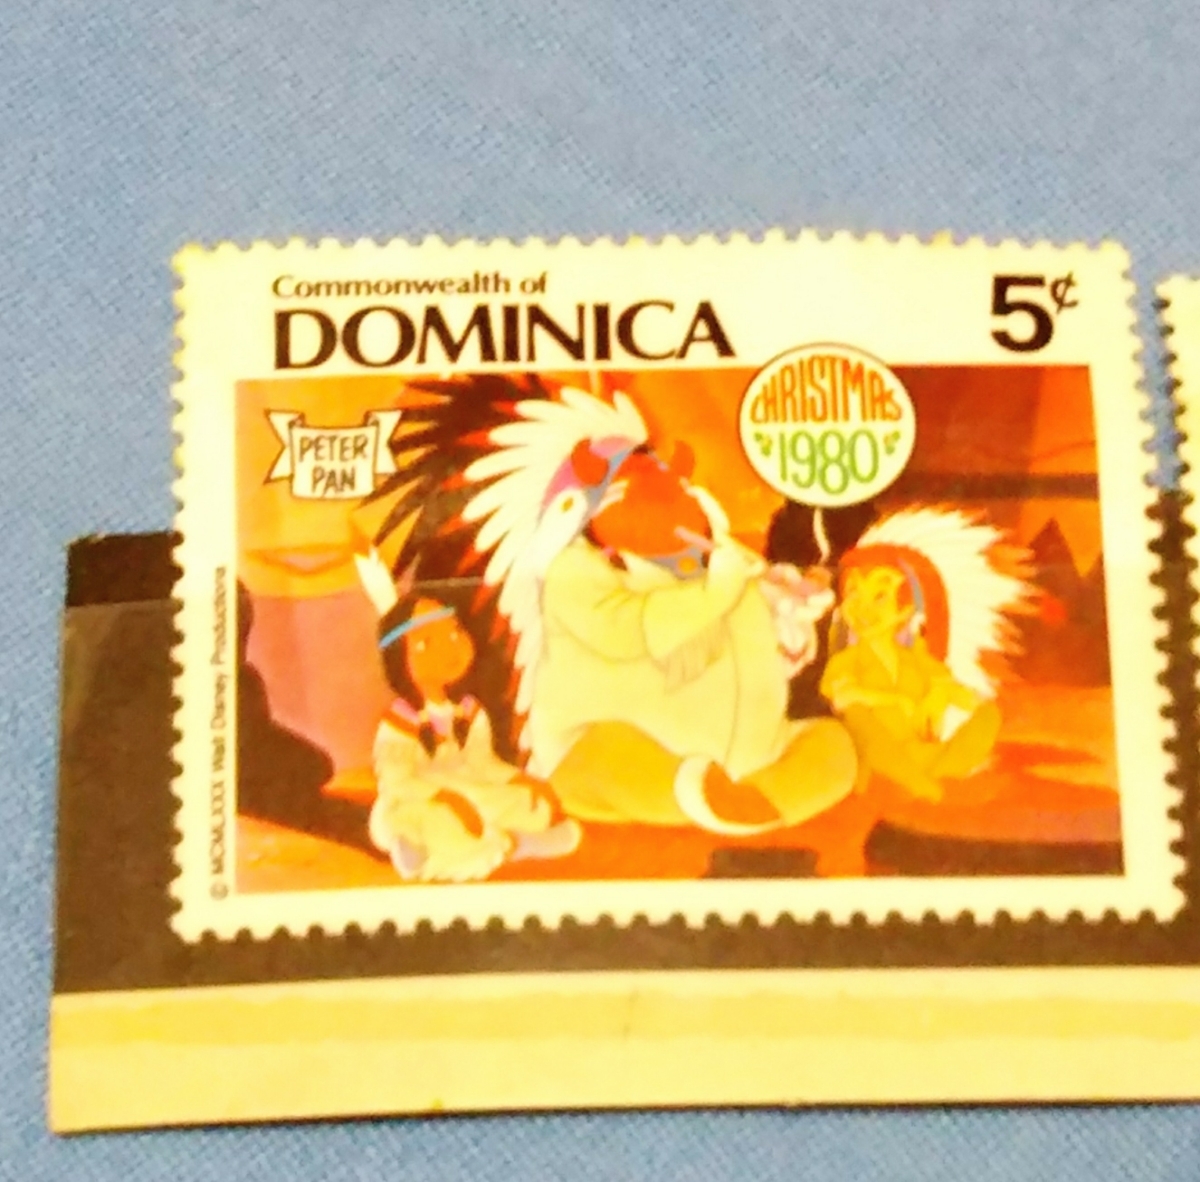 ☆ディズニー☆1980年ドミニカ共和国発行切手3枚セット(クリスマスバージョン)☆コレクターズアイテム_画像2